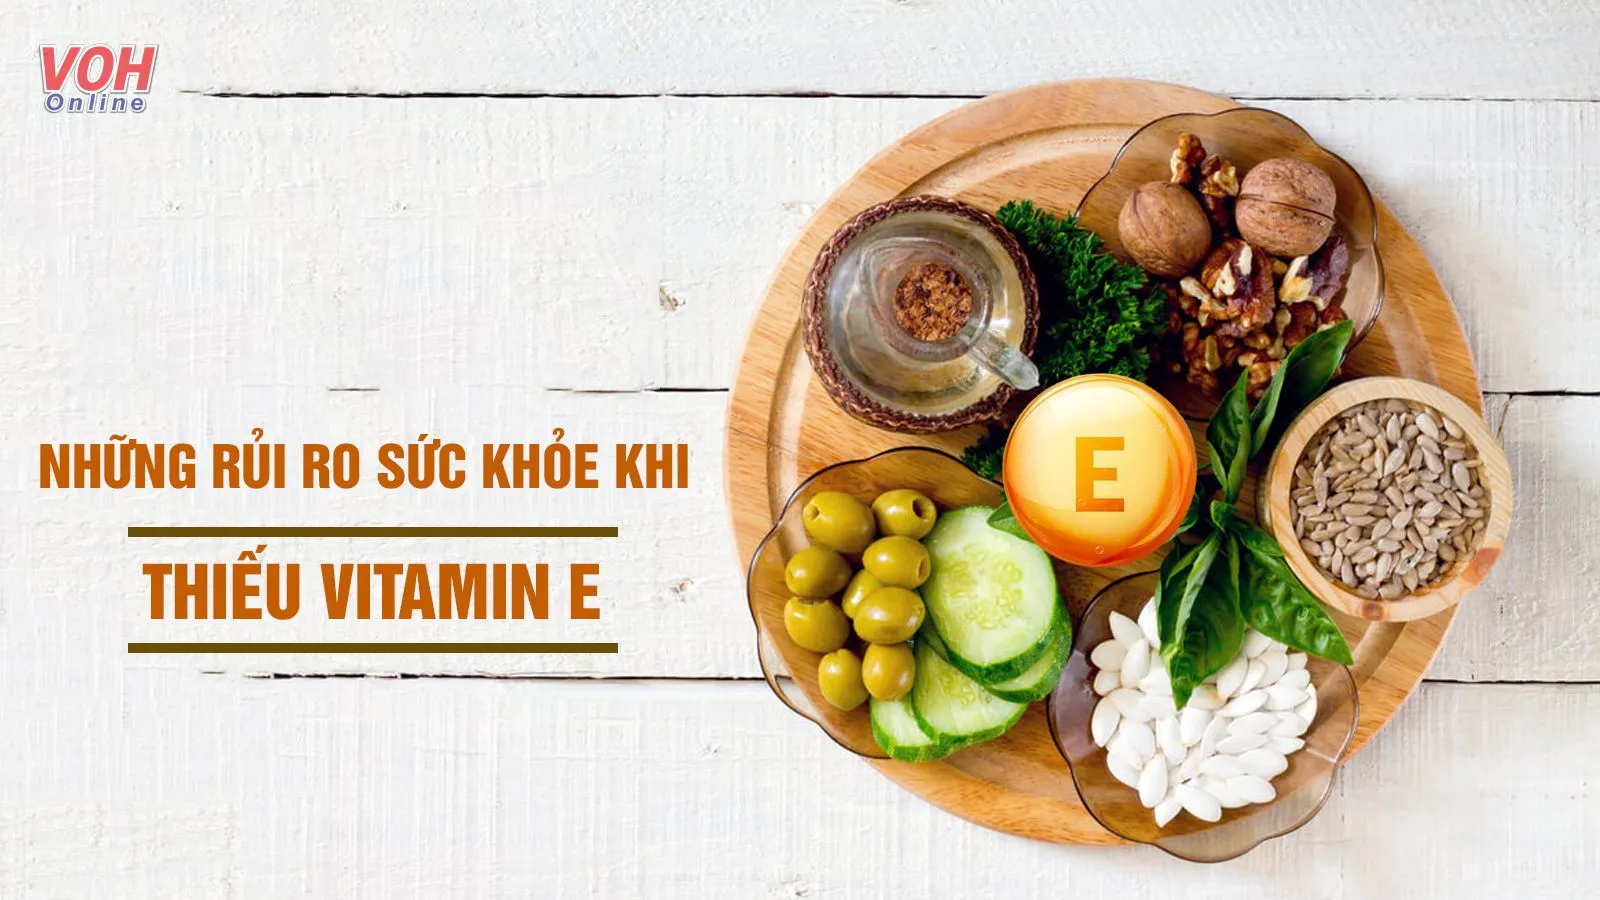 Thiếu vitamin E gây bệnh gì? Dấu hiệu và lưu ý cải thiện cần biết